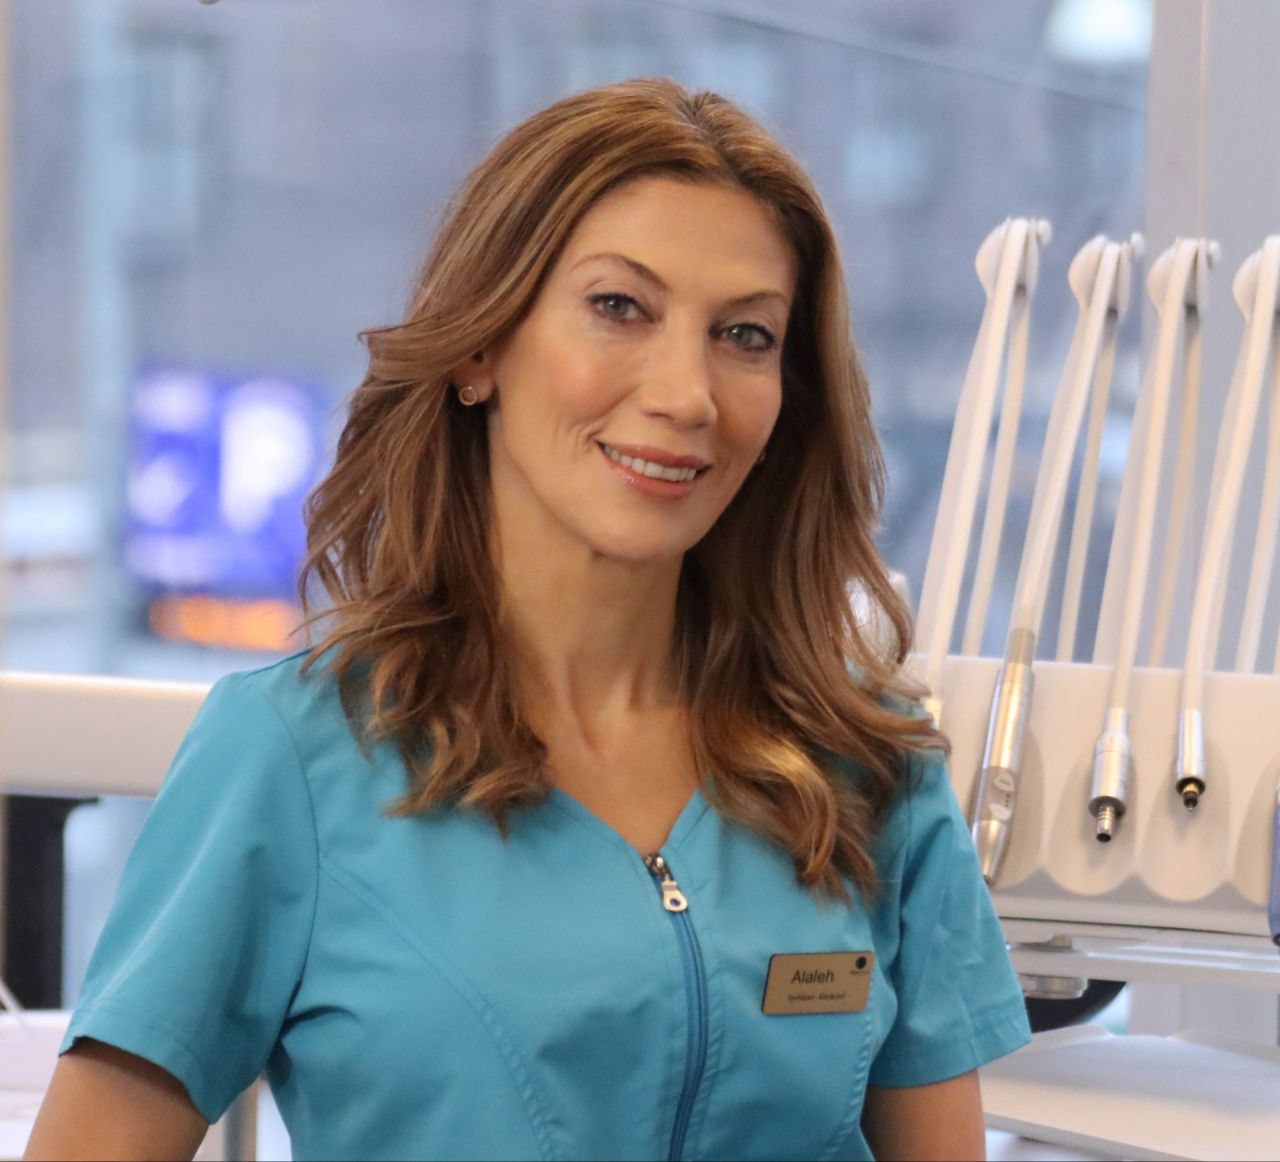 Alaleh tarahomi Best Dentist in Stockholm, bästa Tandläkare i Stockholm